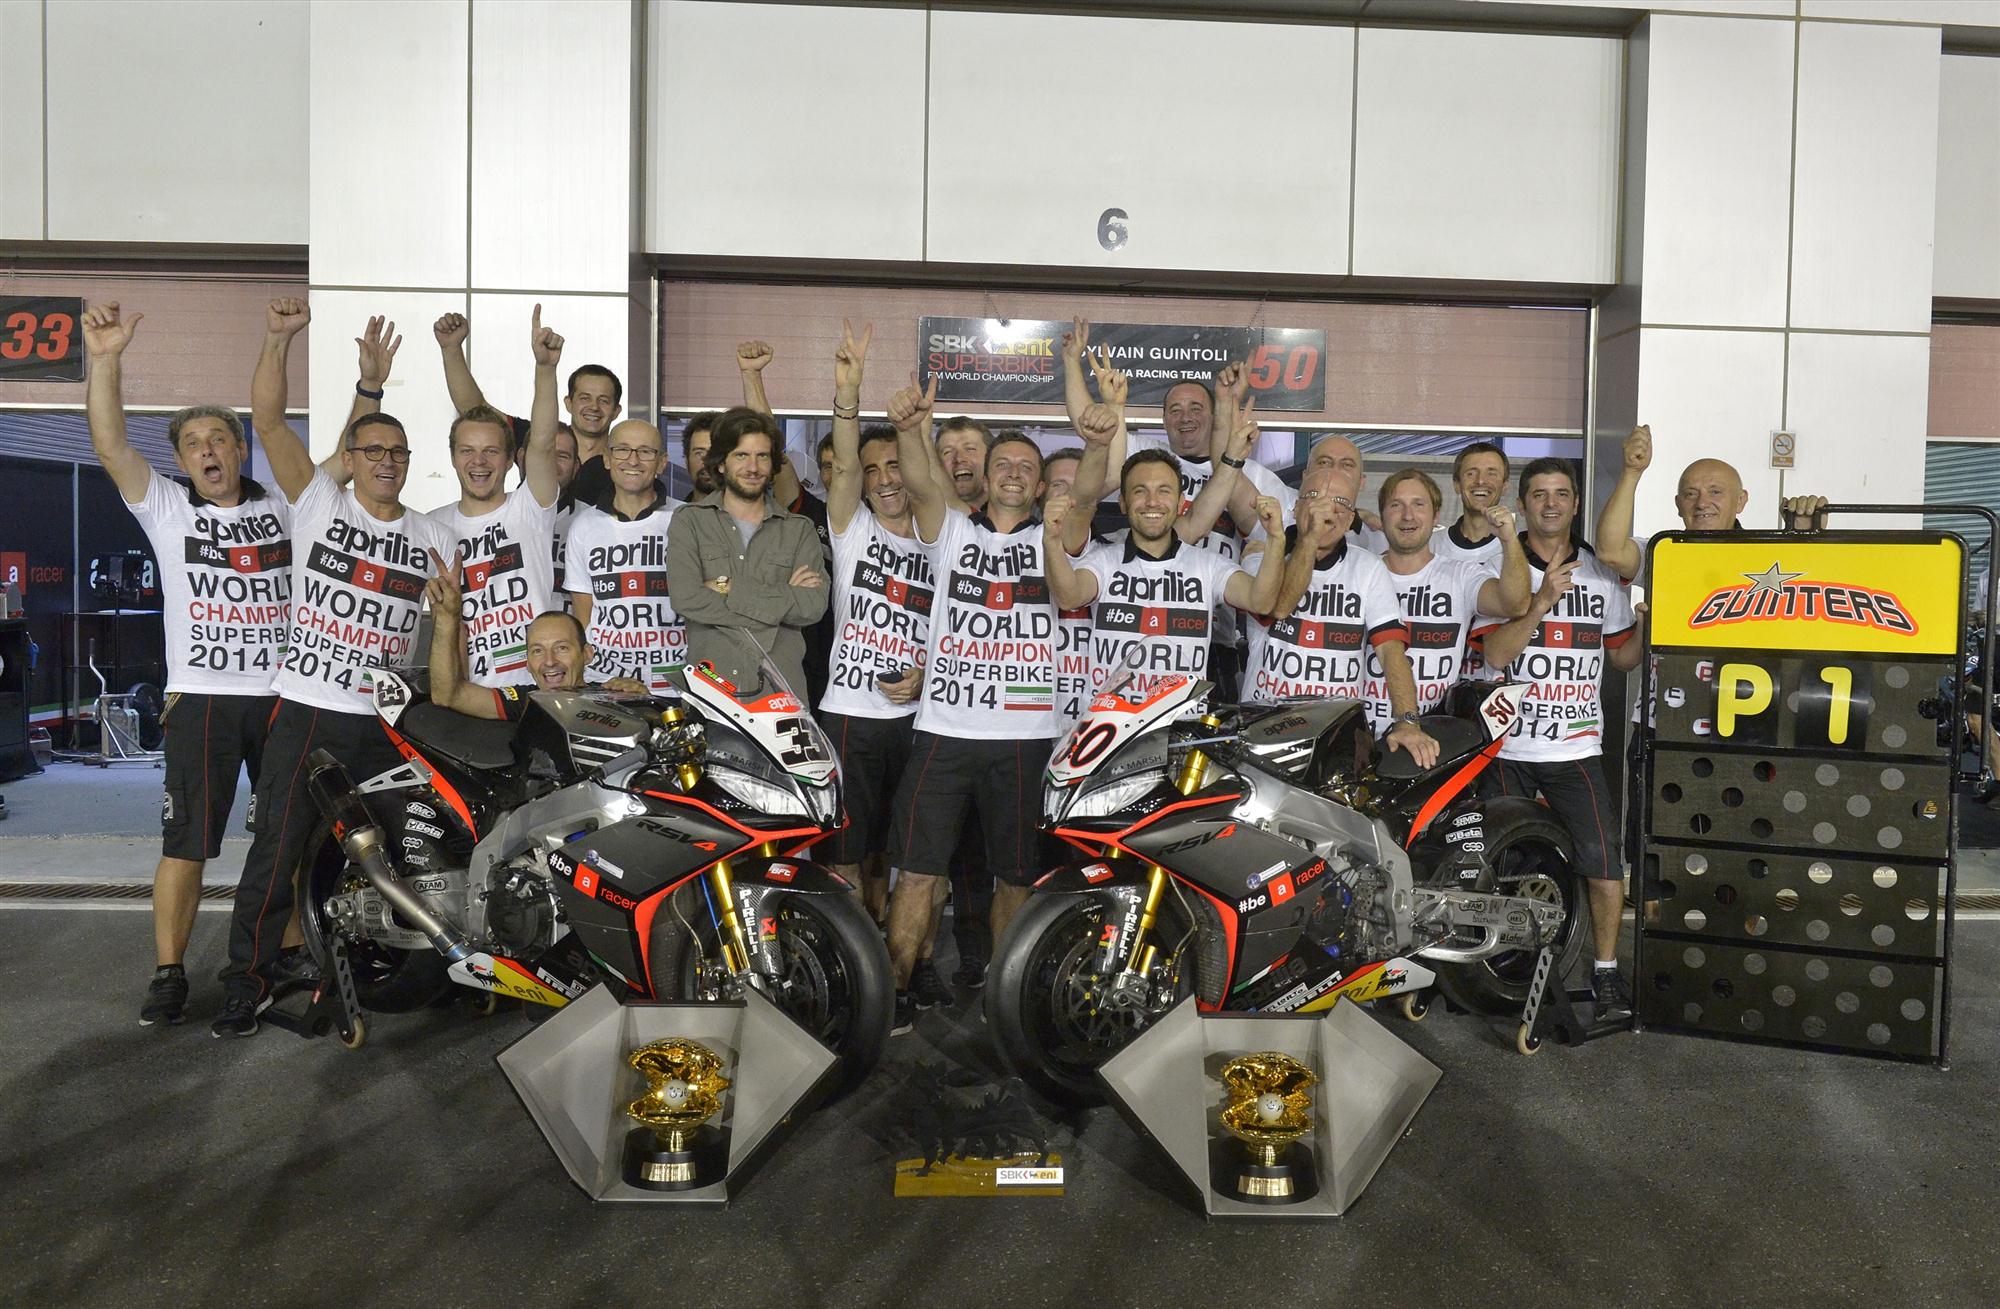 Aprilia World Super Bike Champions 2014 group shot